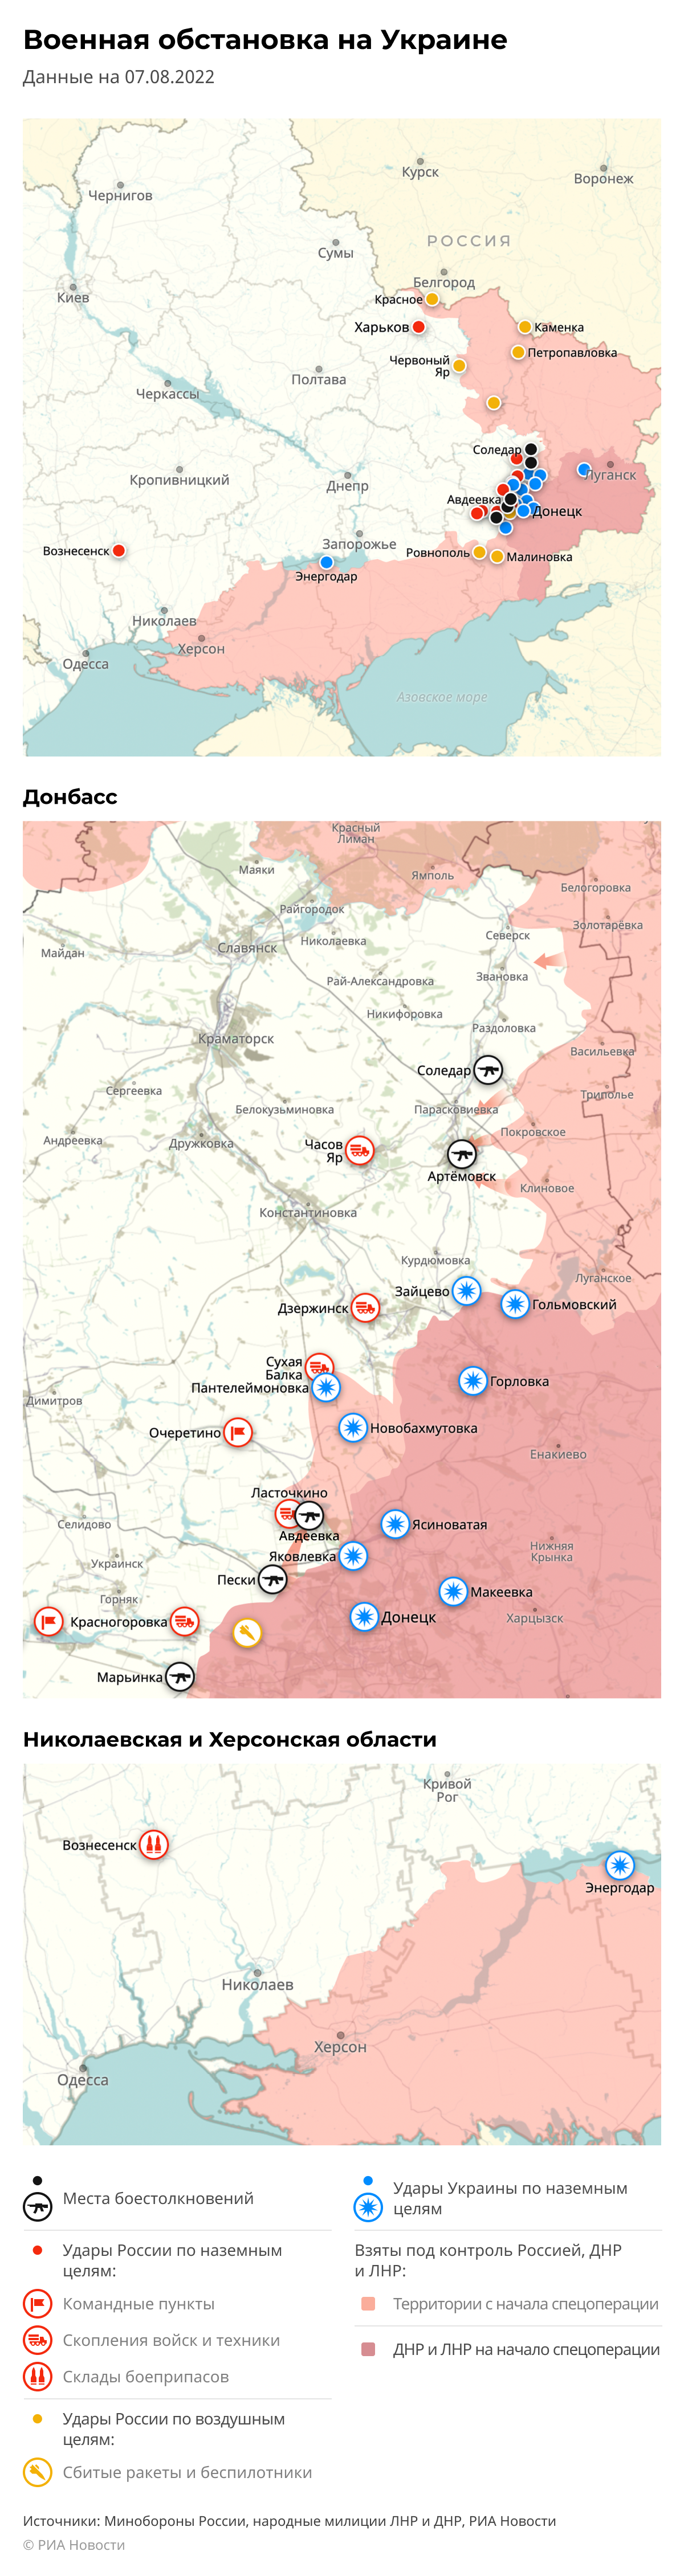 Карта спецоперации Вооруженных сил России на Украине на 07.08.2022